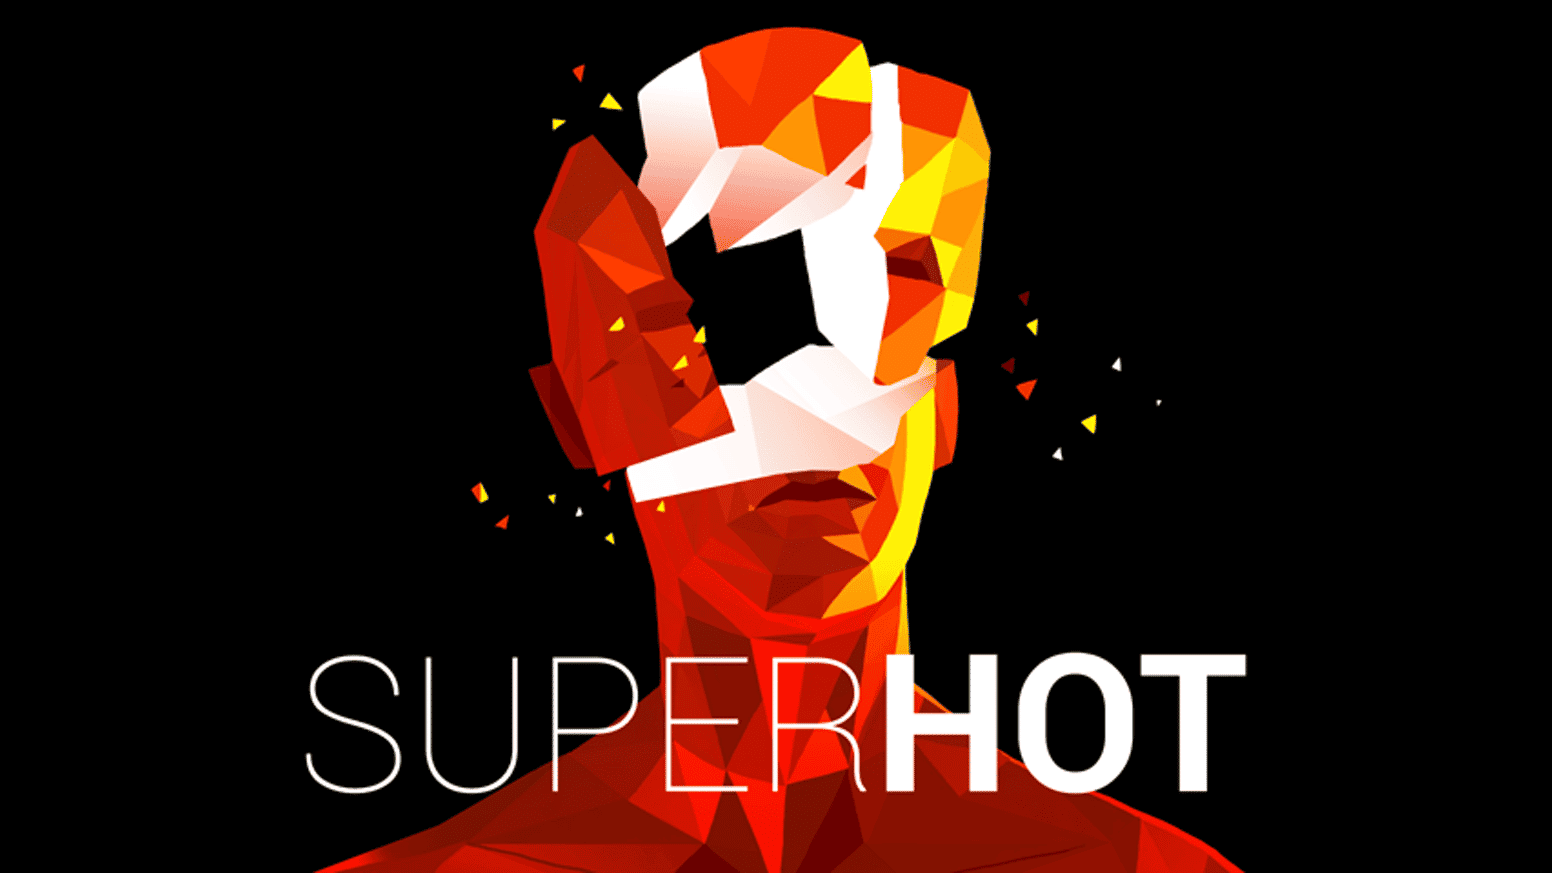 El shooter en primera persona Superhot disponible hoy en la eShop de Switch